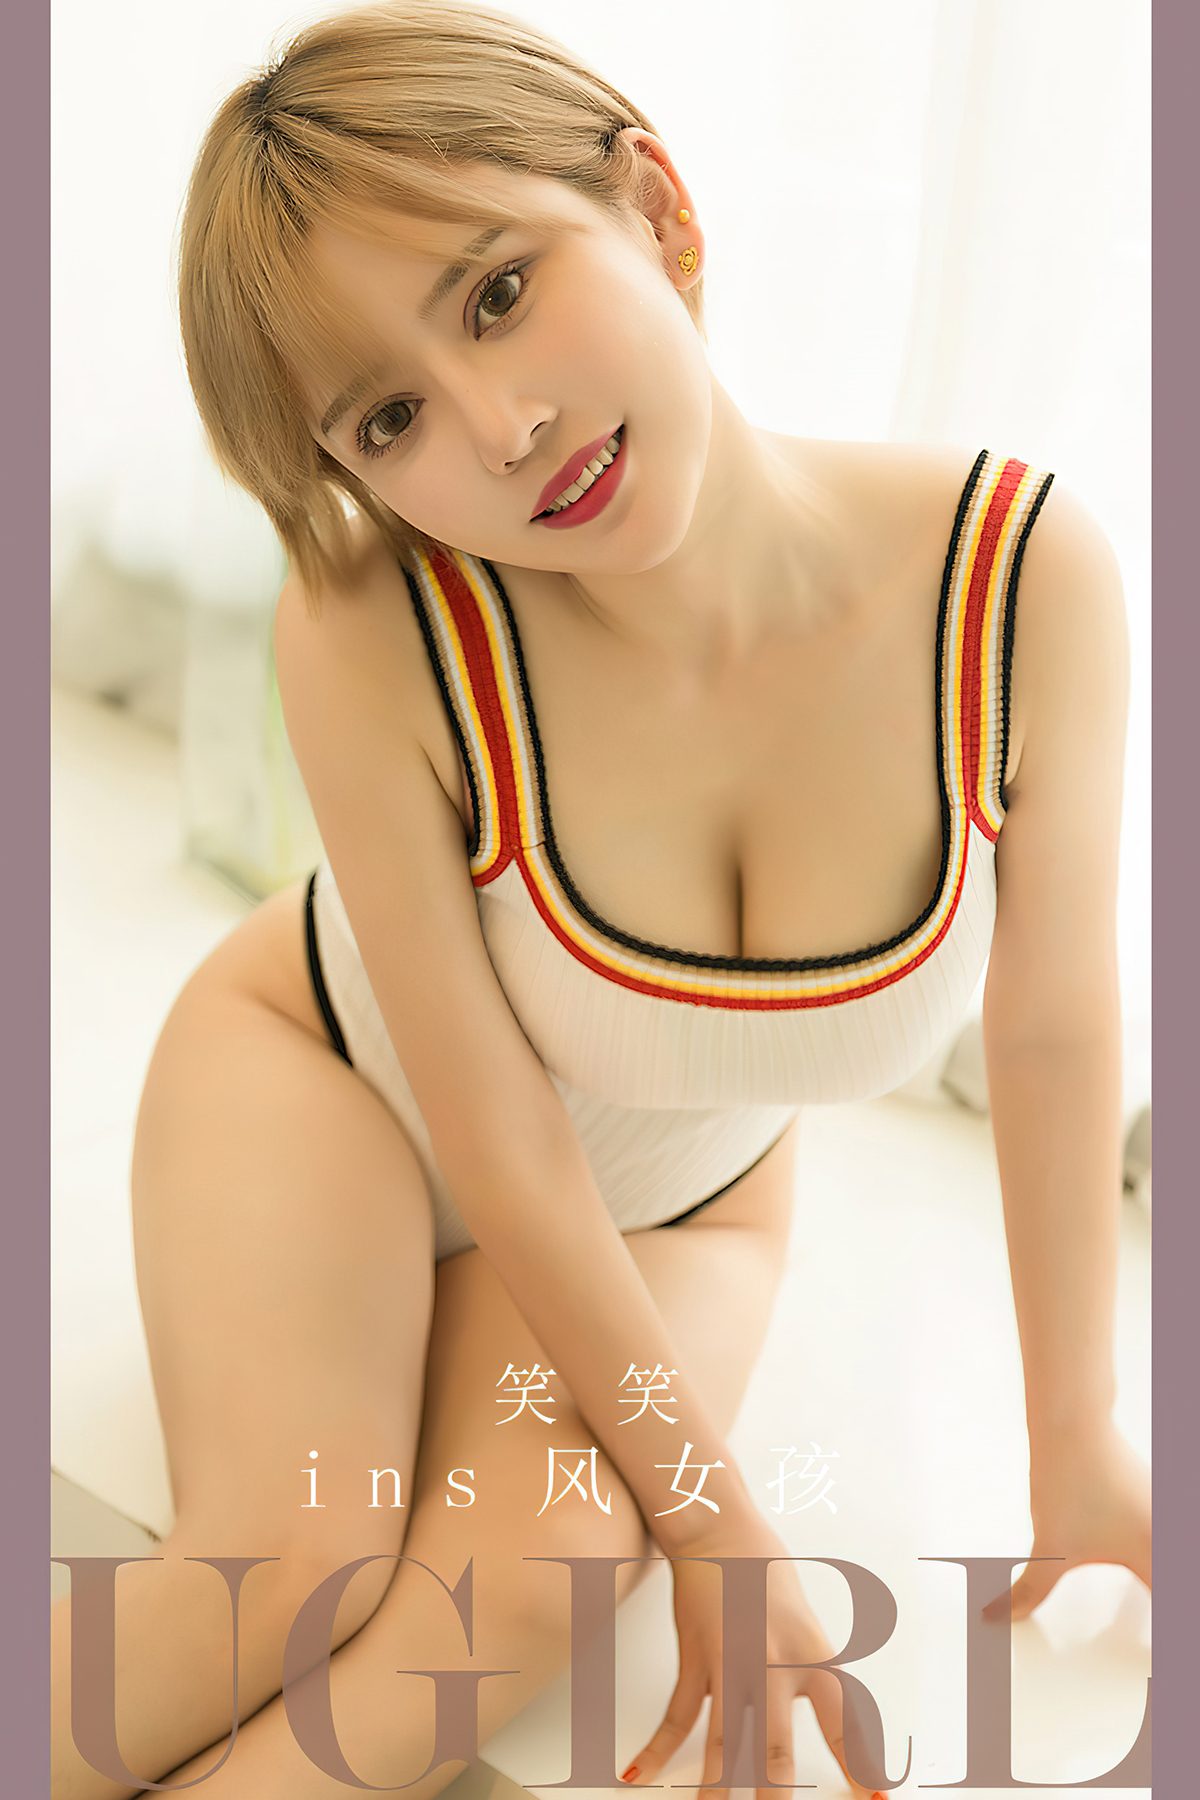 Ugirls App尤果圈 No 2700 Xiao Xiao 0008 6722249625.jpg